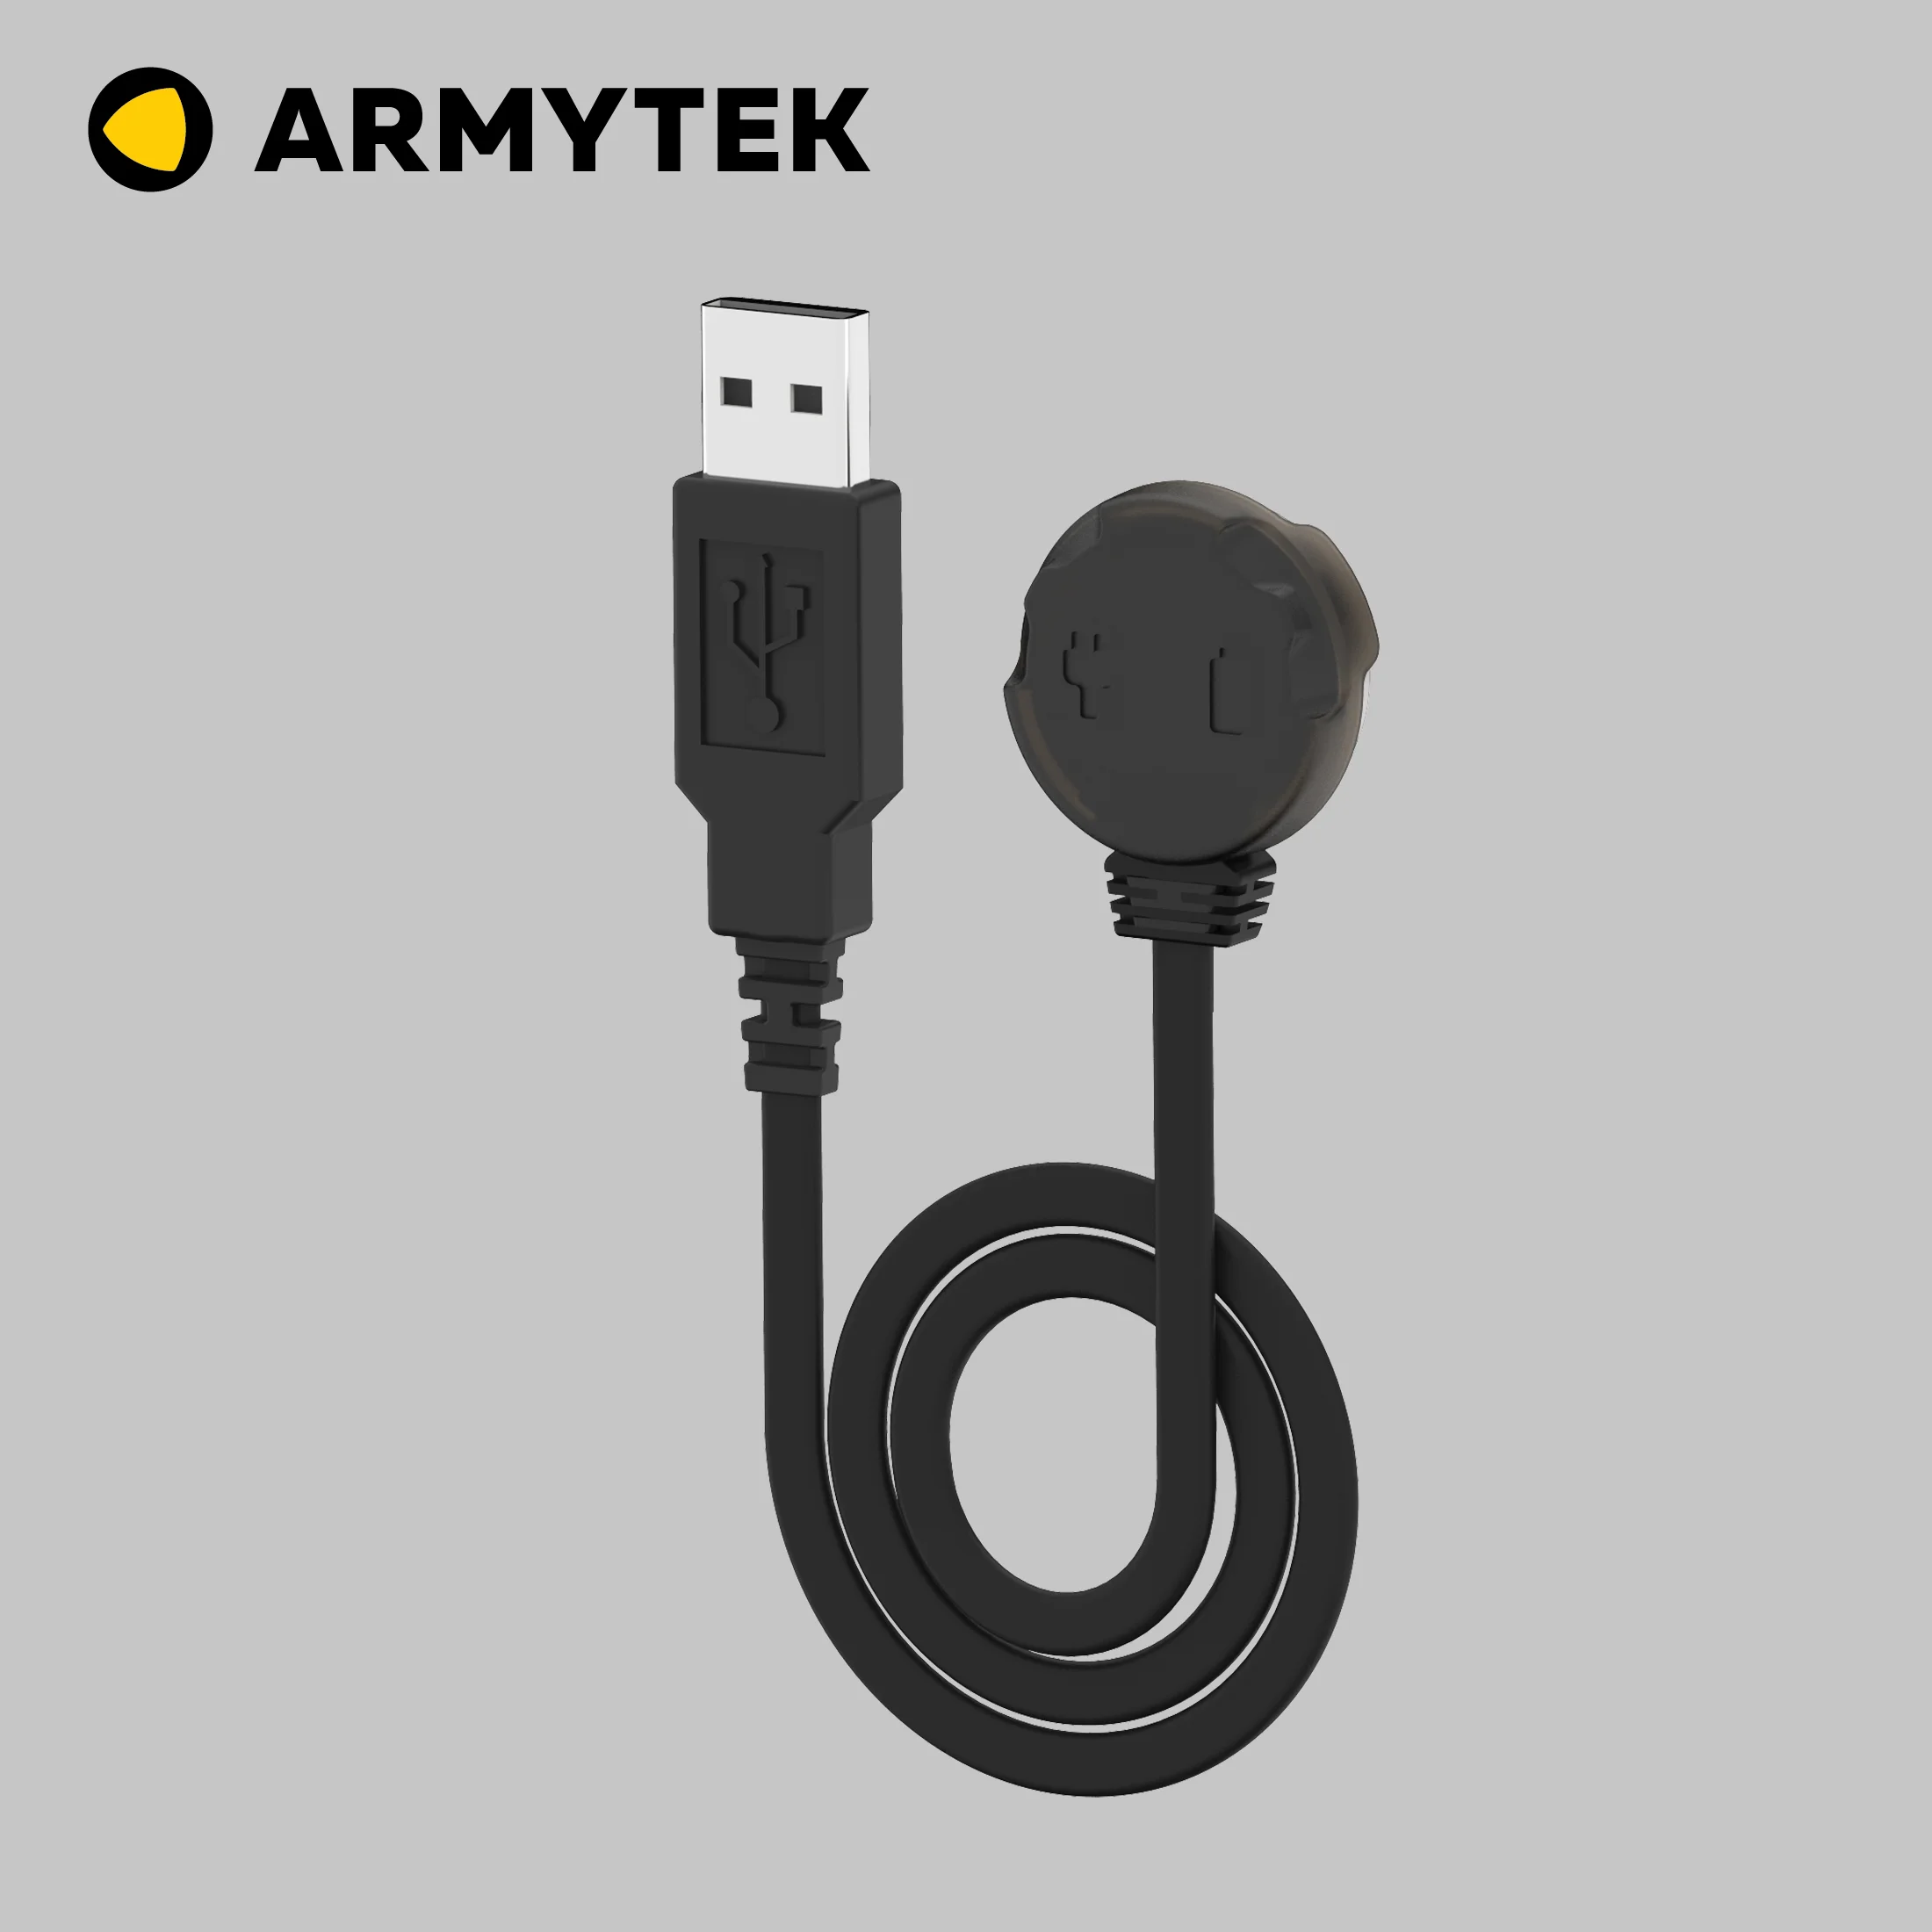 USB fenerleri için Armytek Evrensel Manyetik Şarj Cihazı AMC-02 (Sihirbaz / Başbakan / Taç)